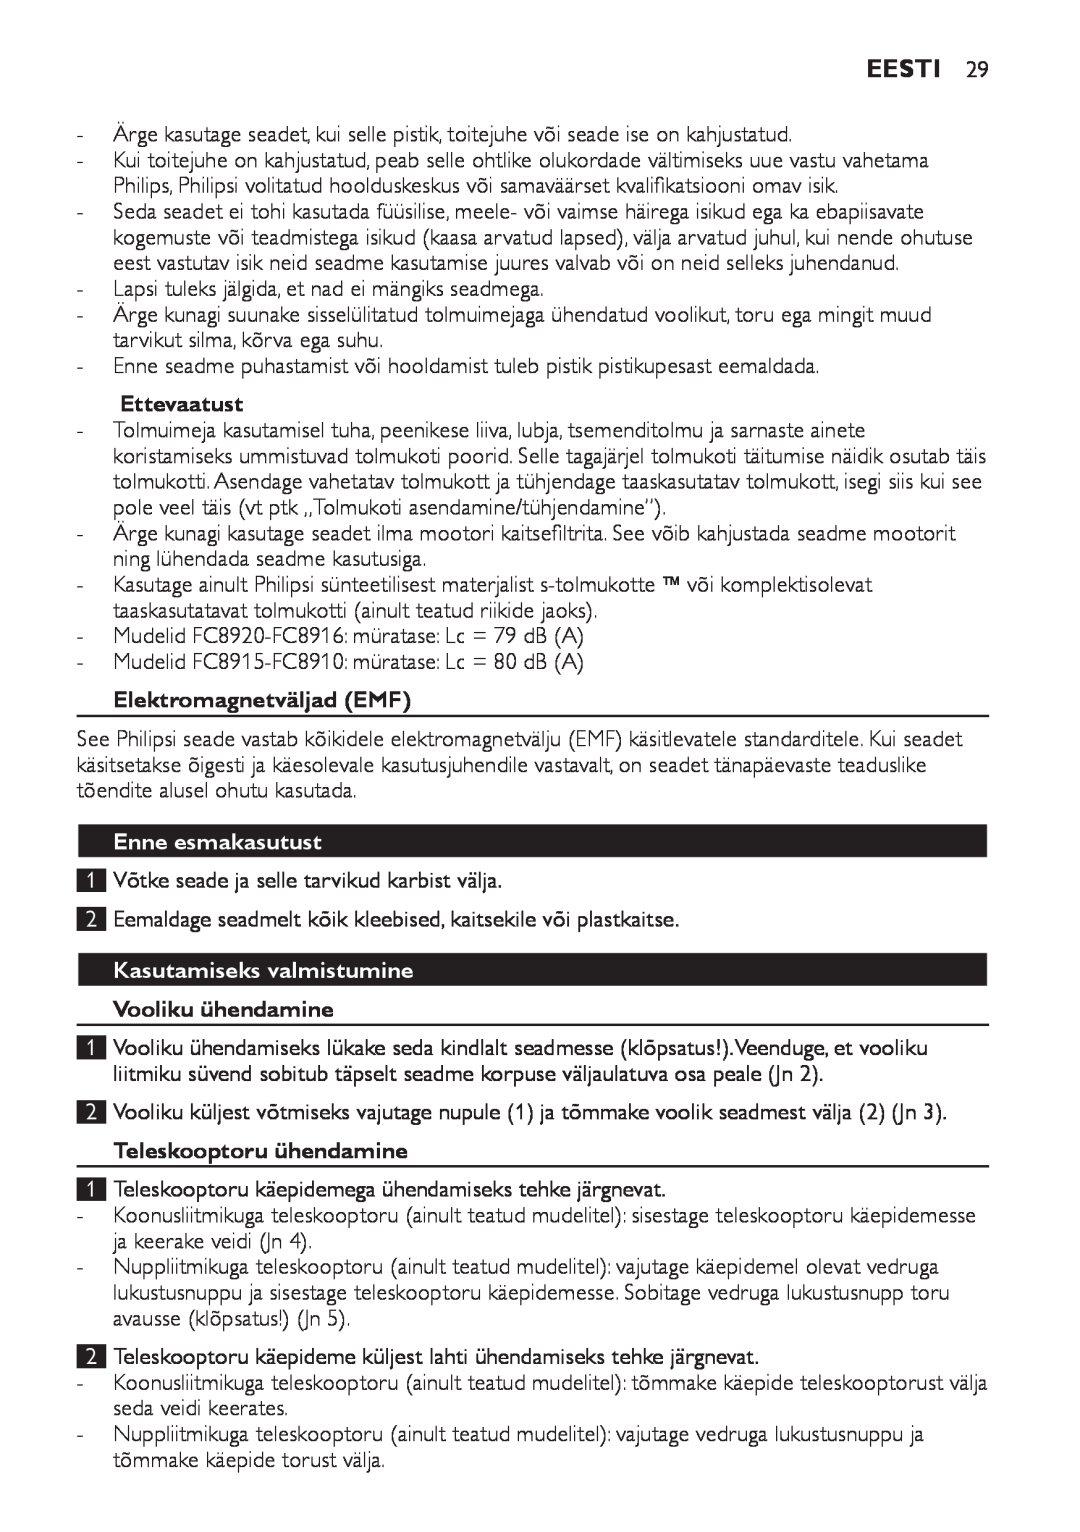 Philips FC8920-FC8910 manual Eesti, Ettevaatust, Elektromagnetväljad EMF, Enne esmakasutust, Kasutamiseks valmistumine 